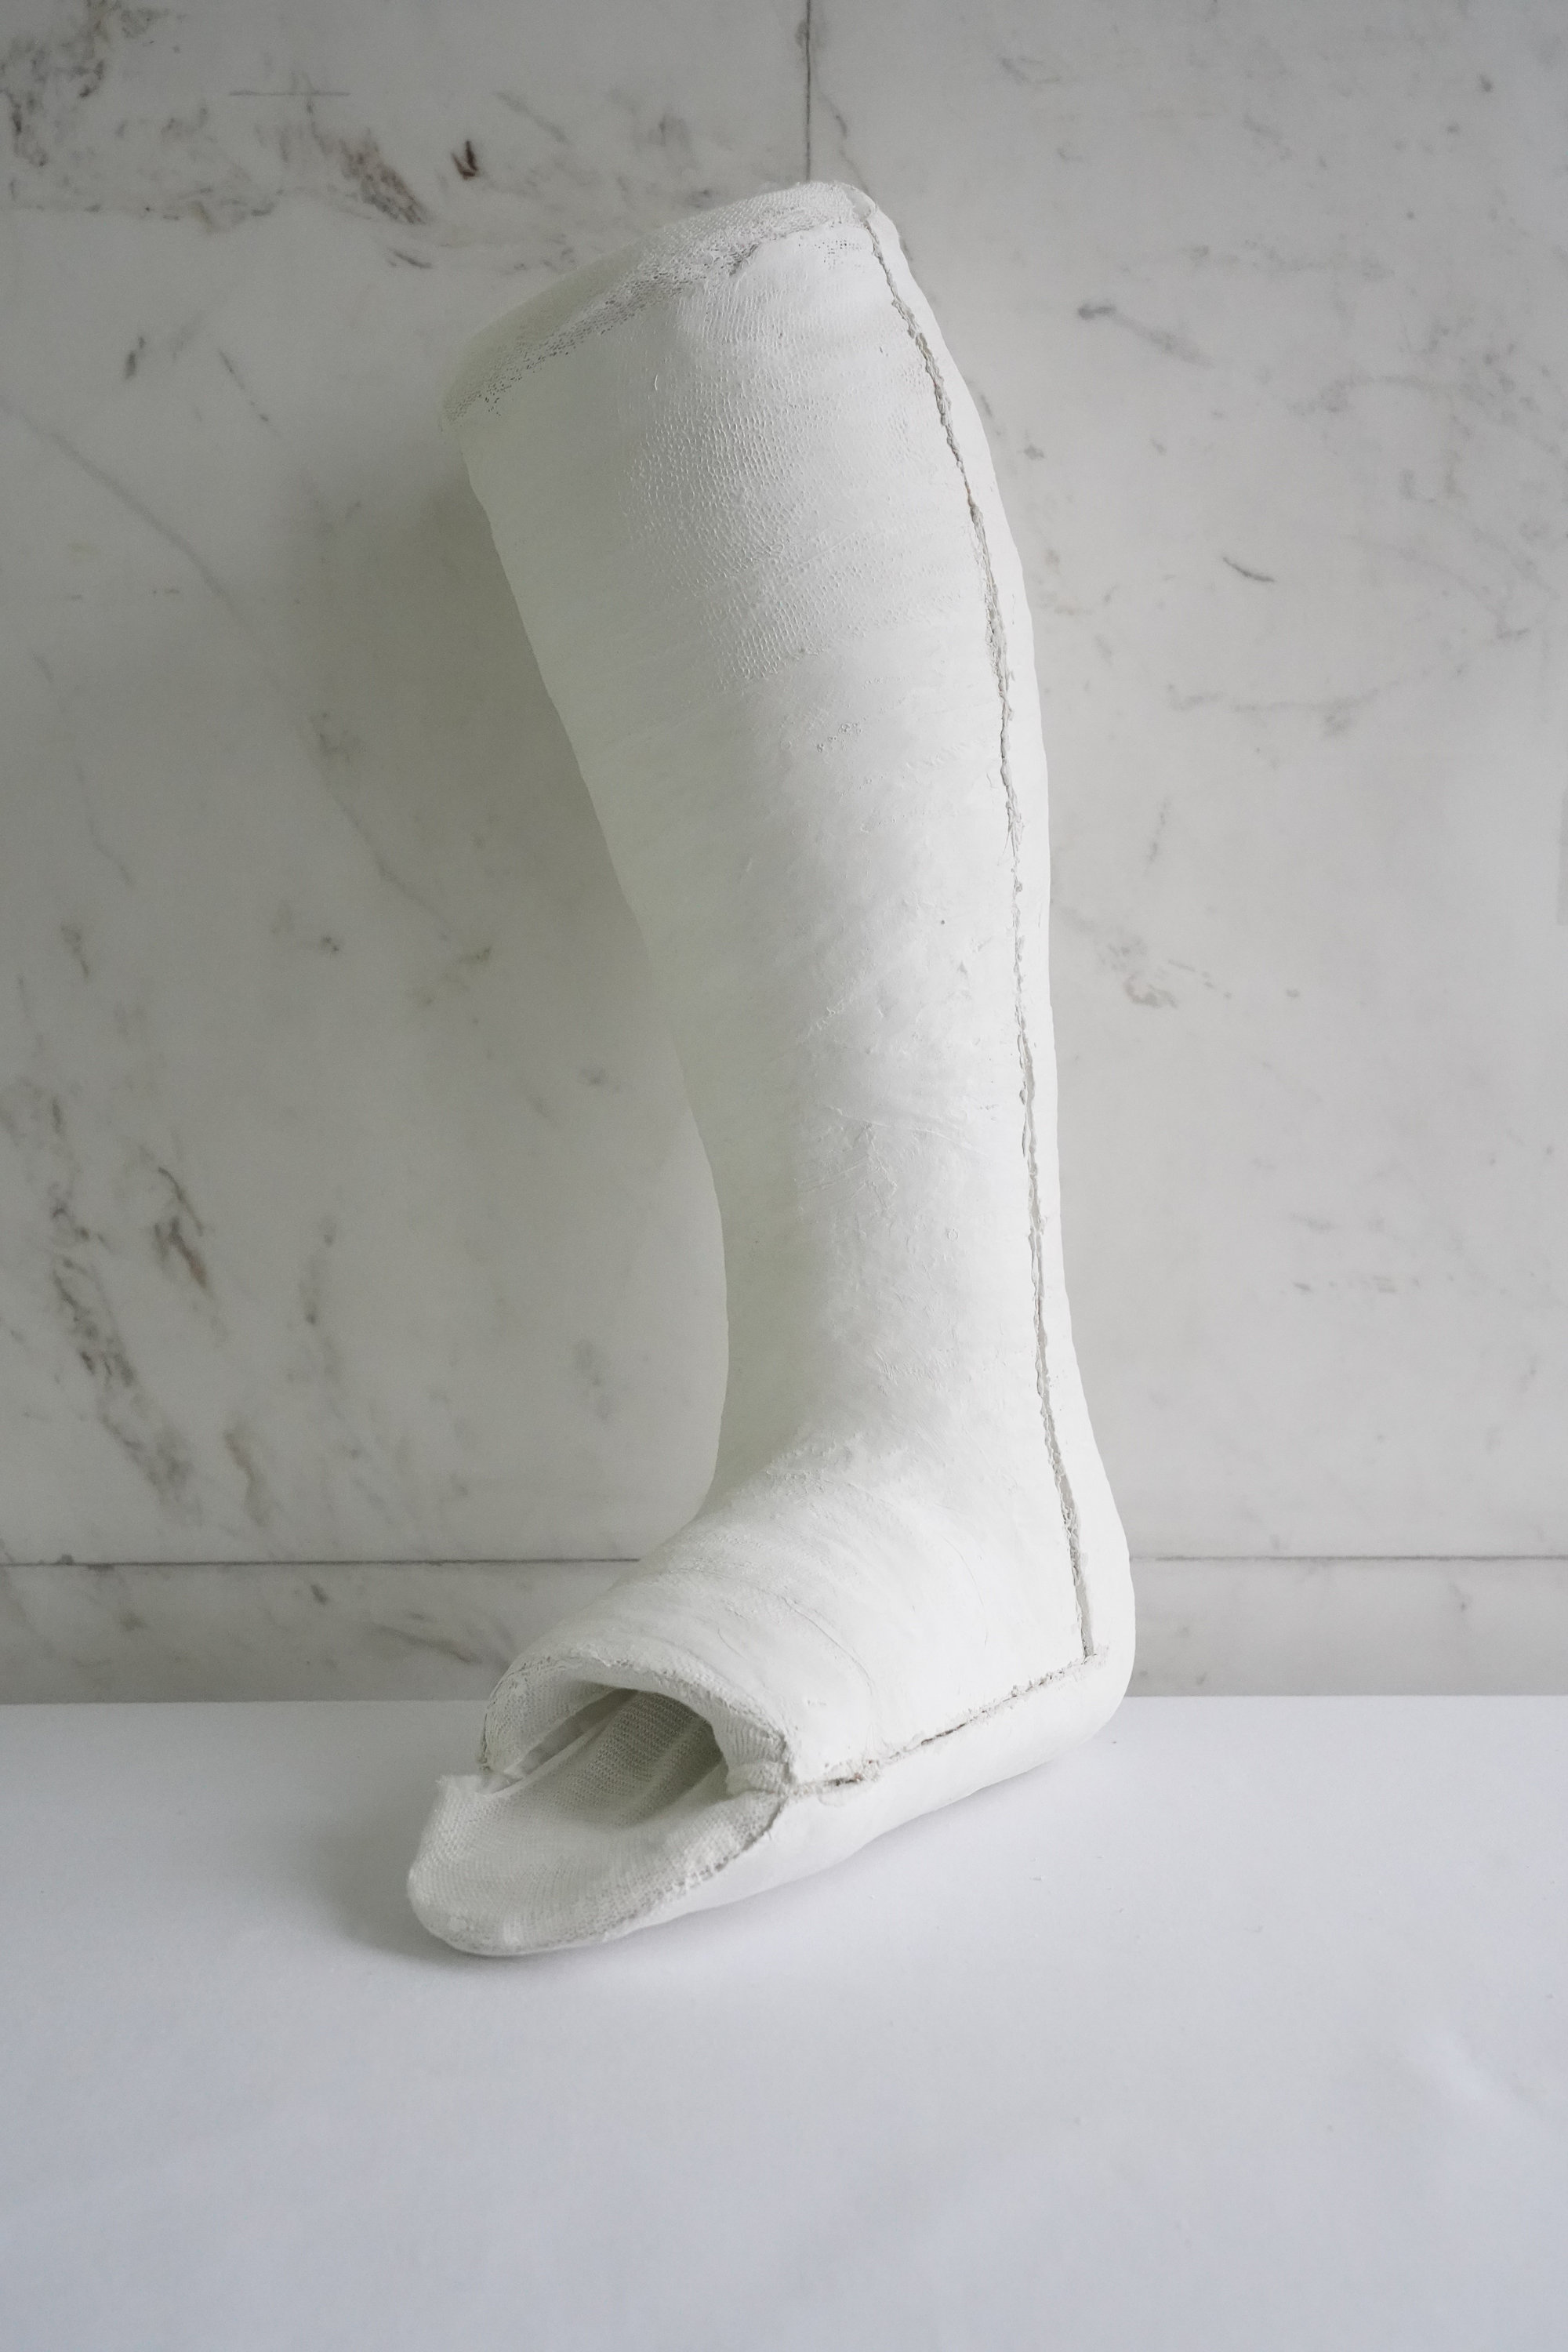 Below knee cast – Plaster Room